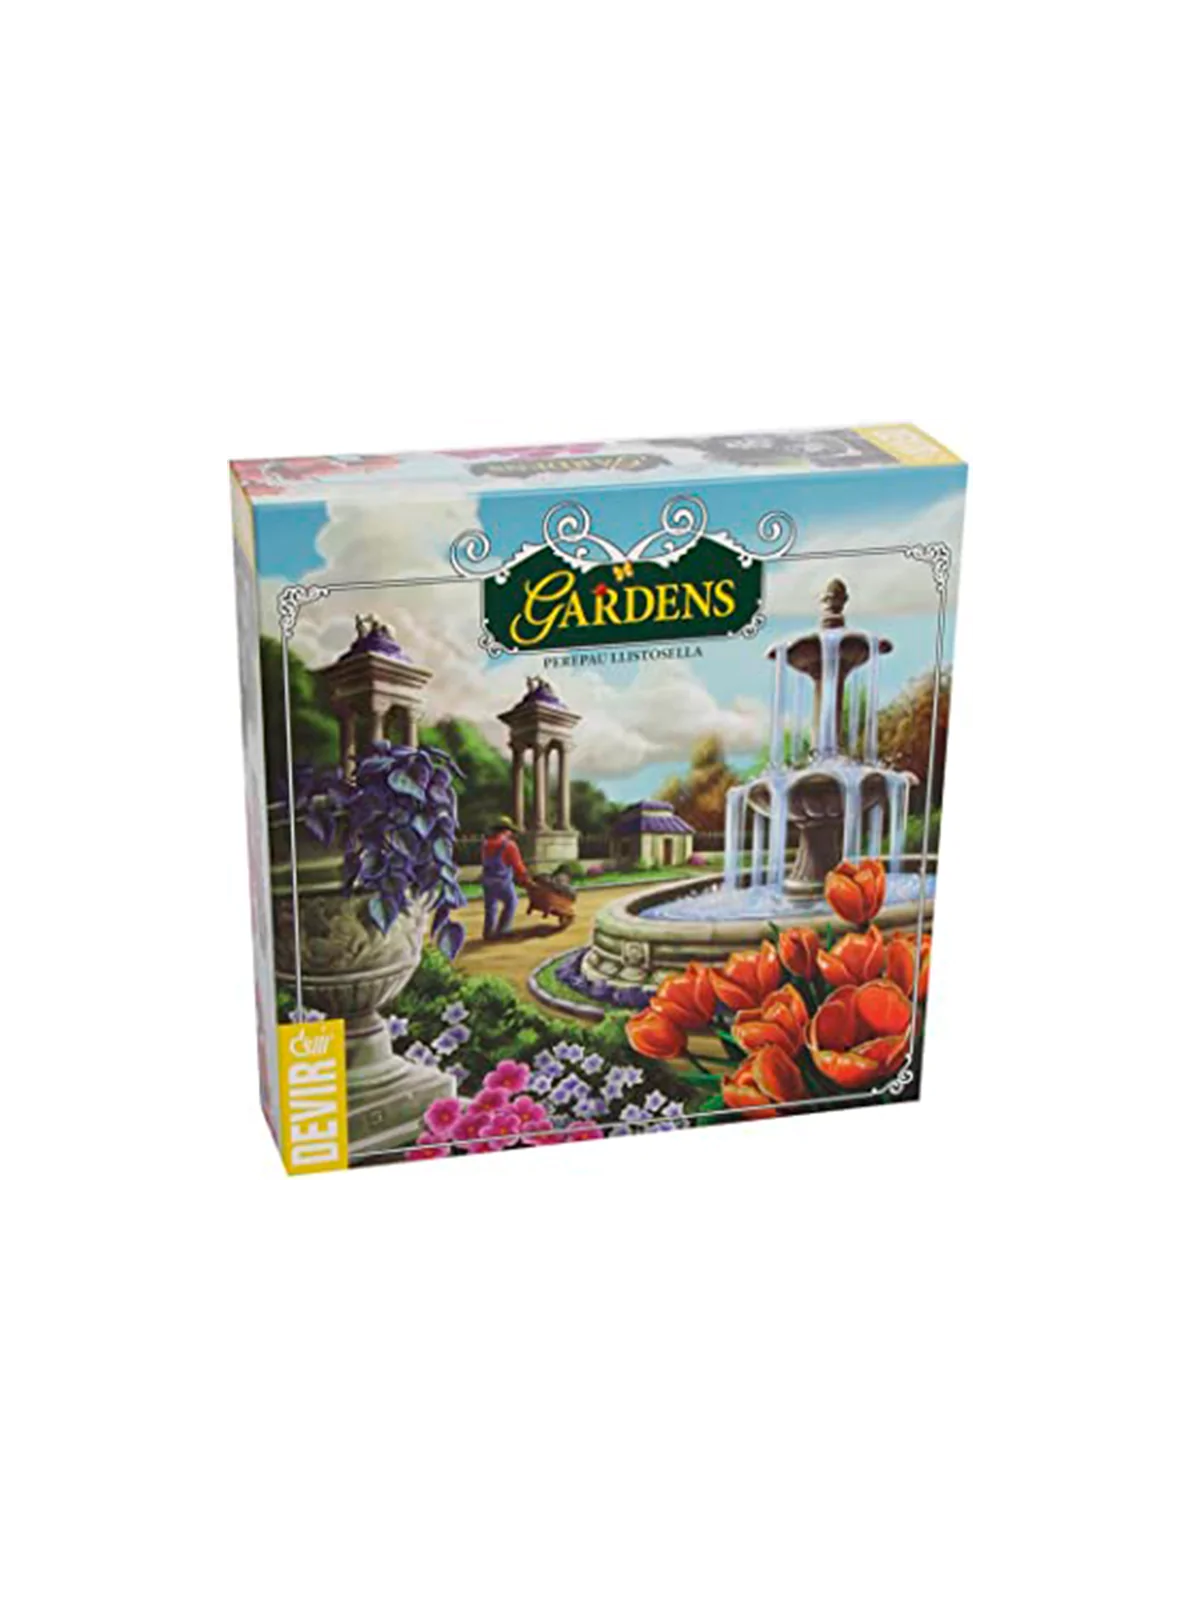 Comprar Gardens barato al mejor precio 24,30 € de Devir